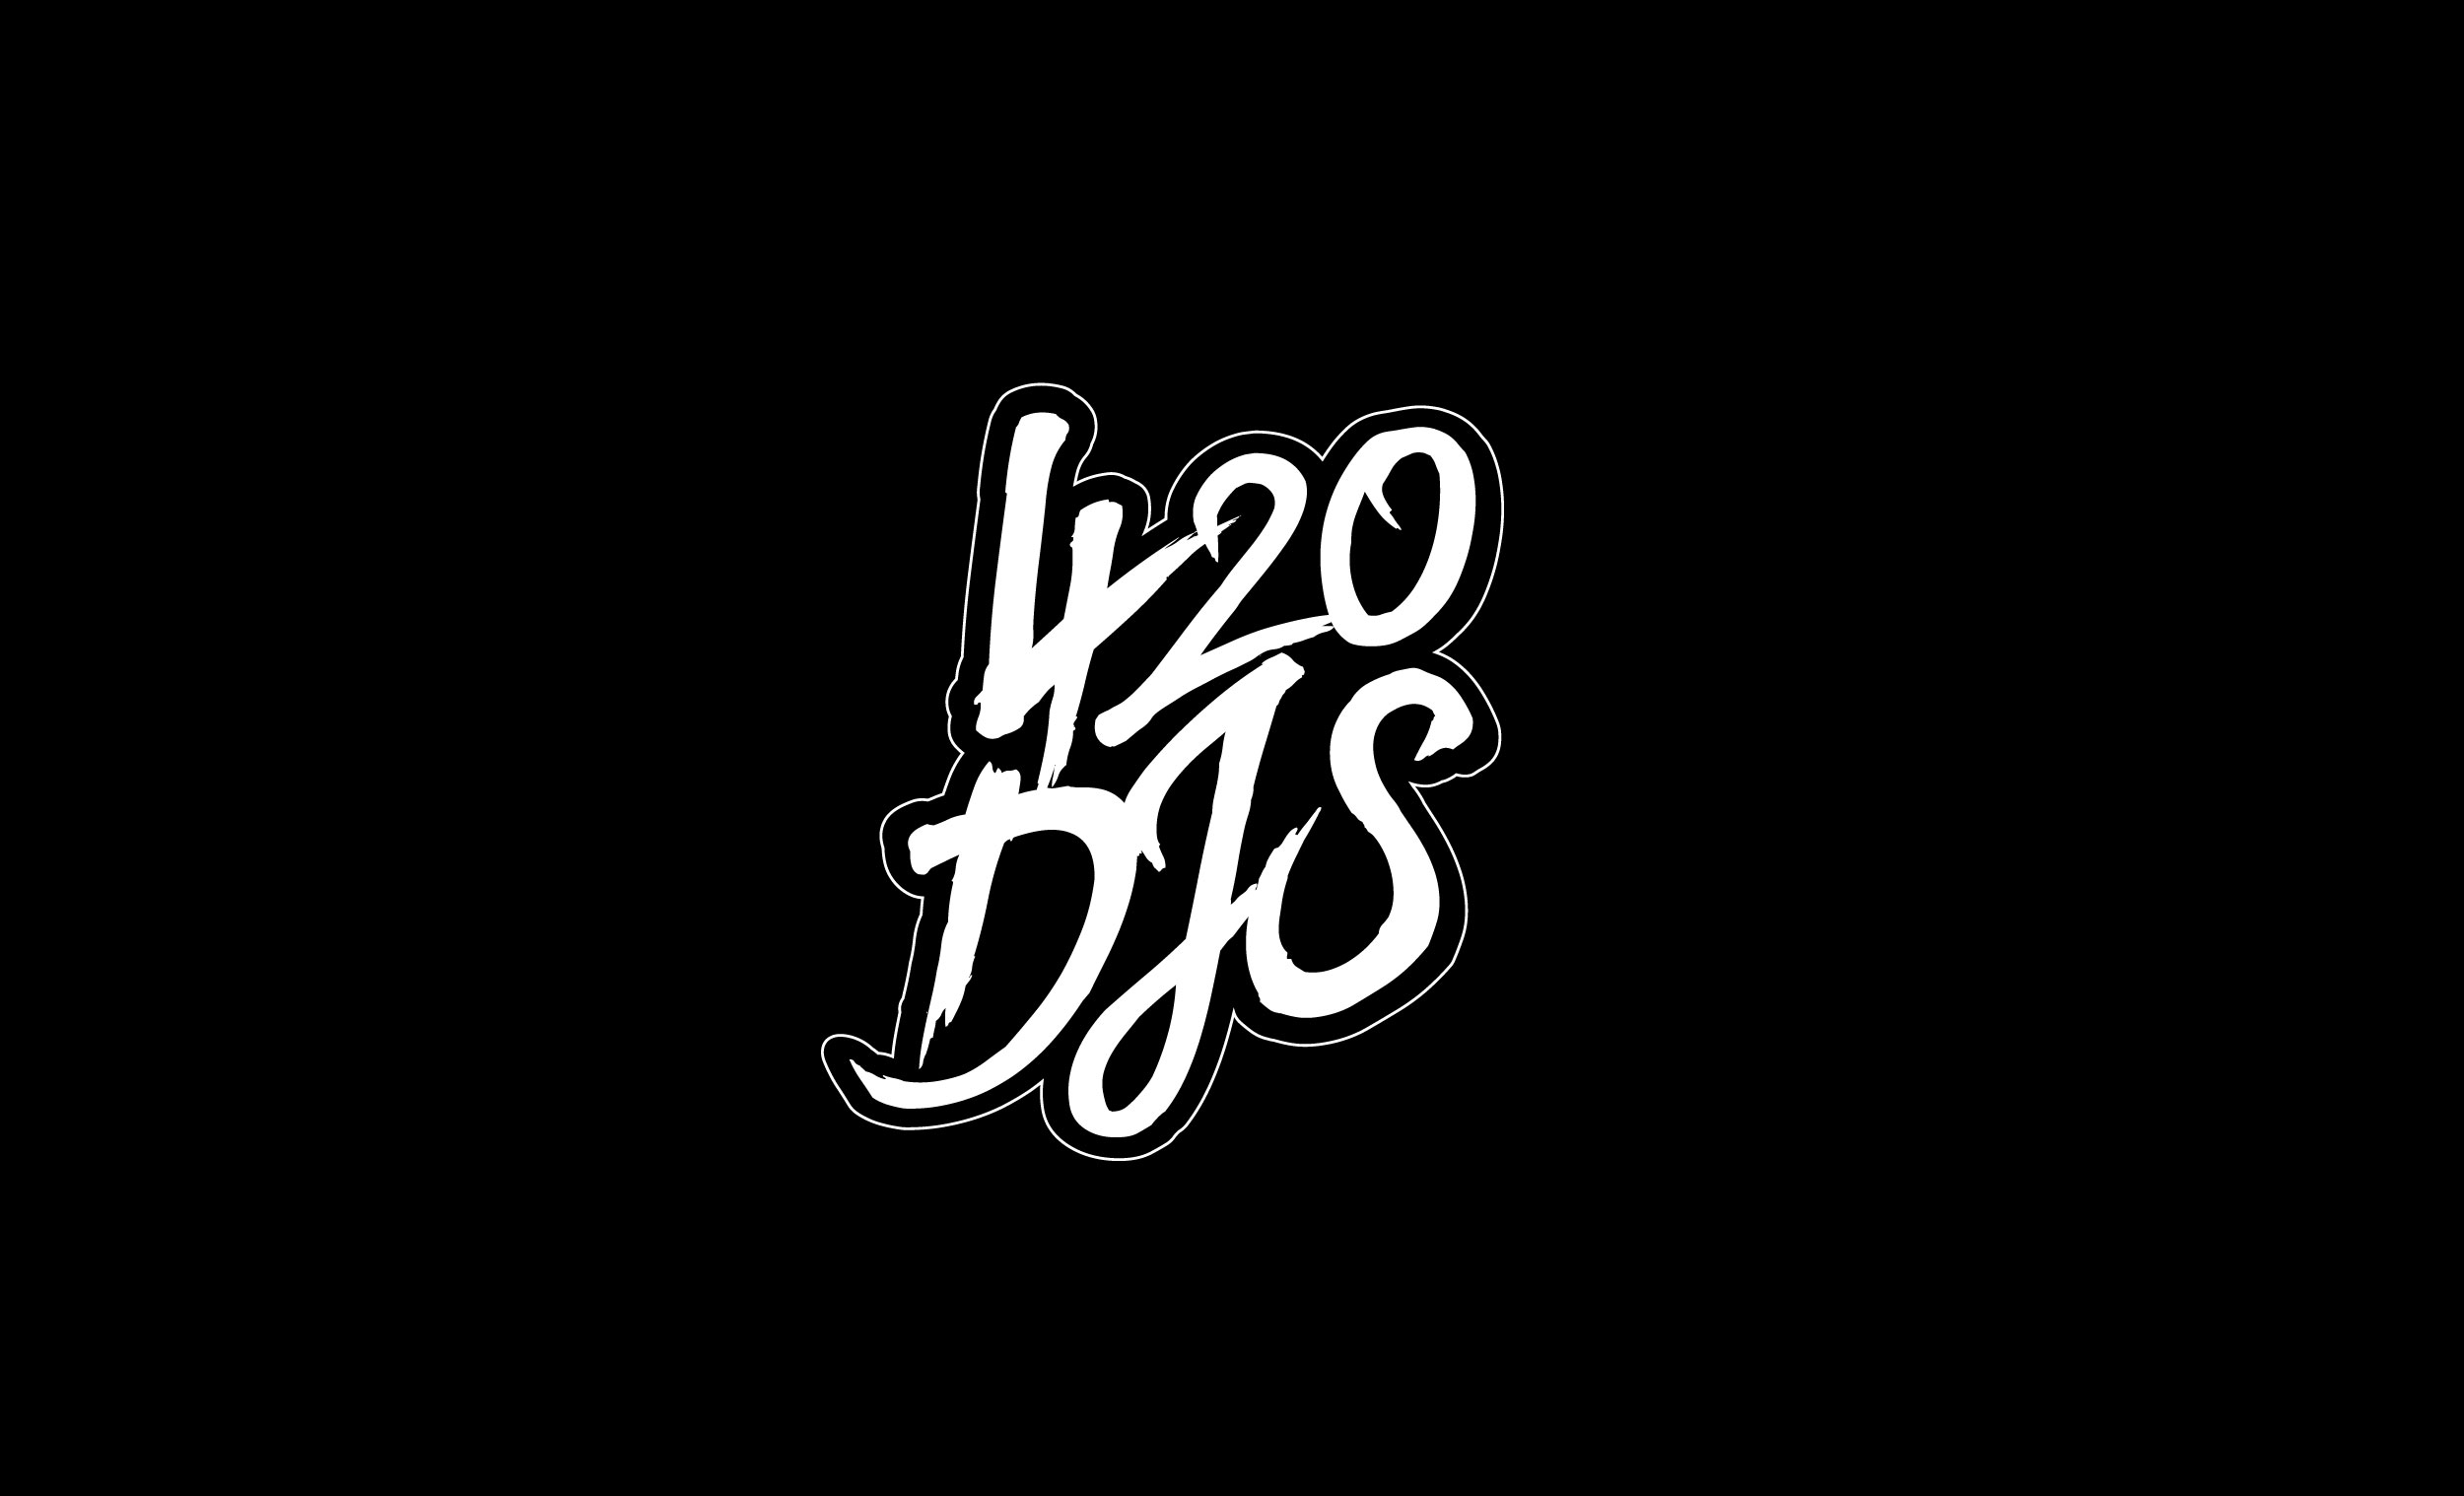 420 djs logo